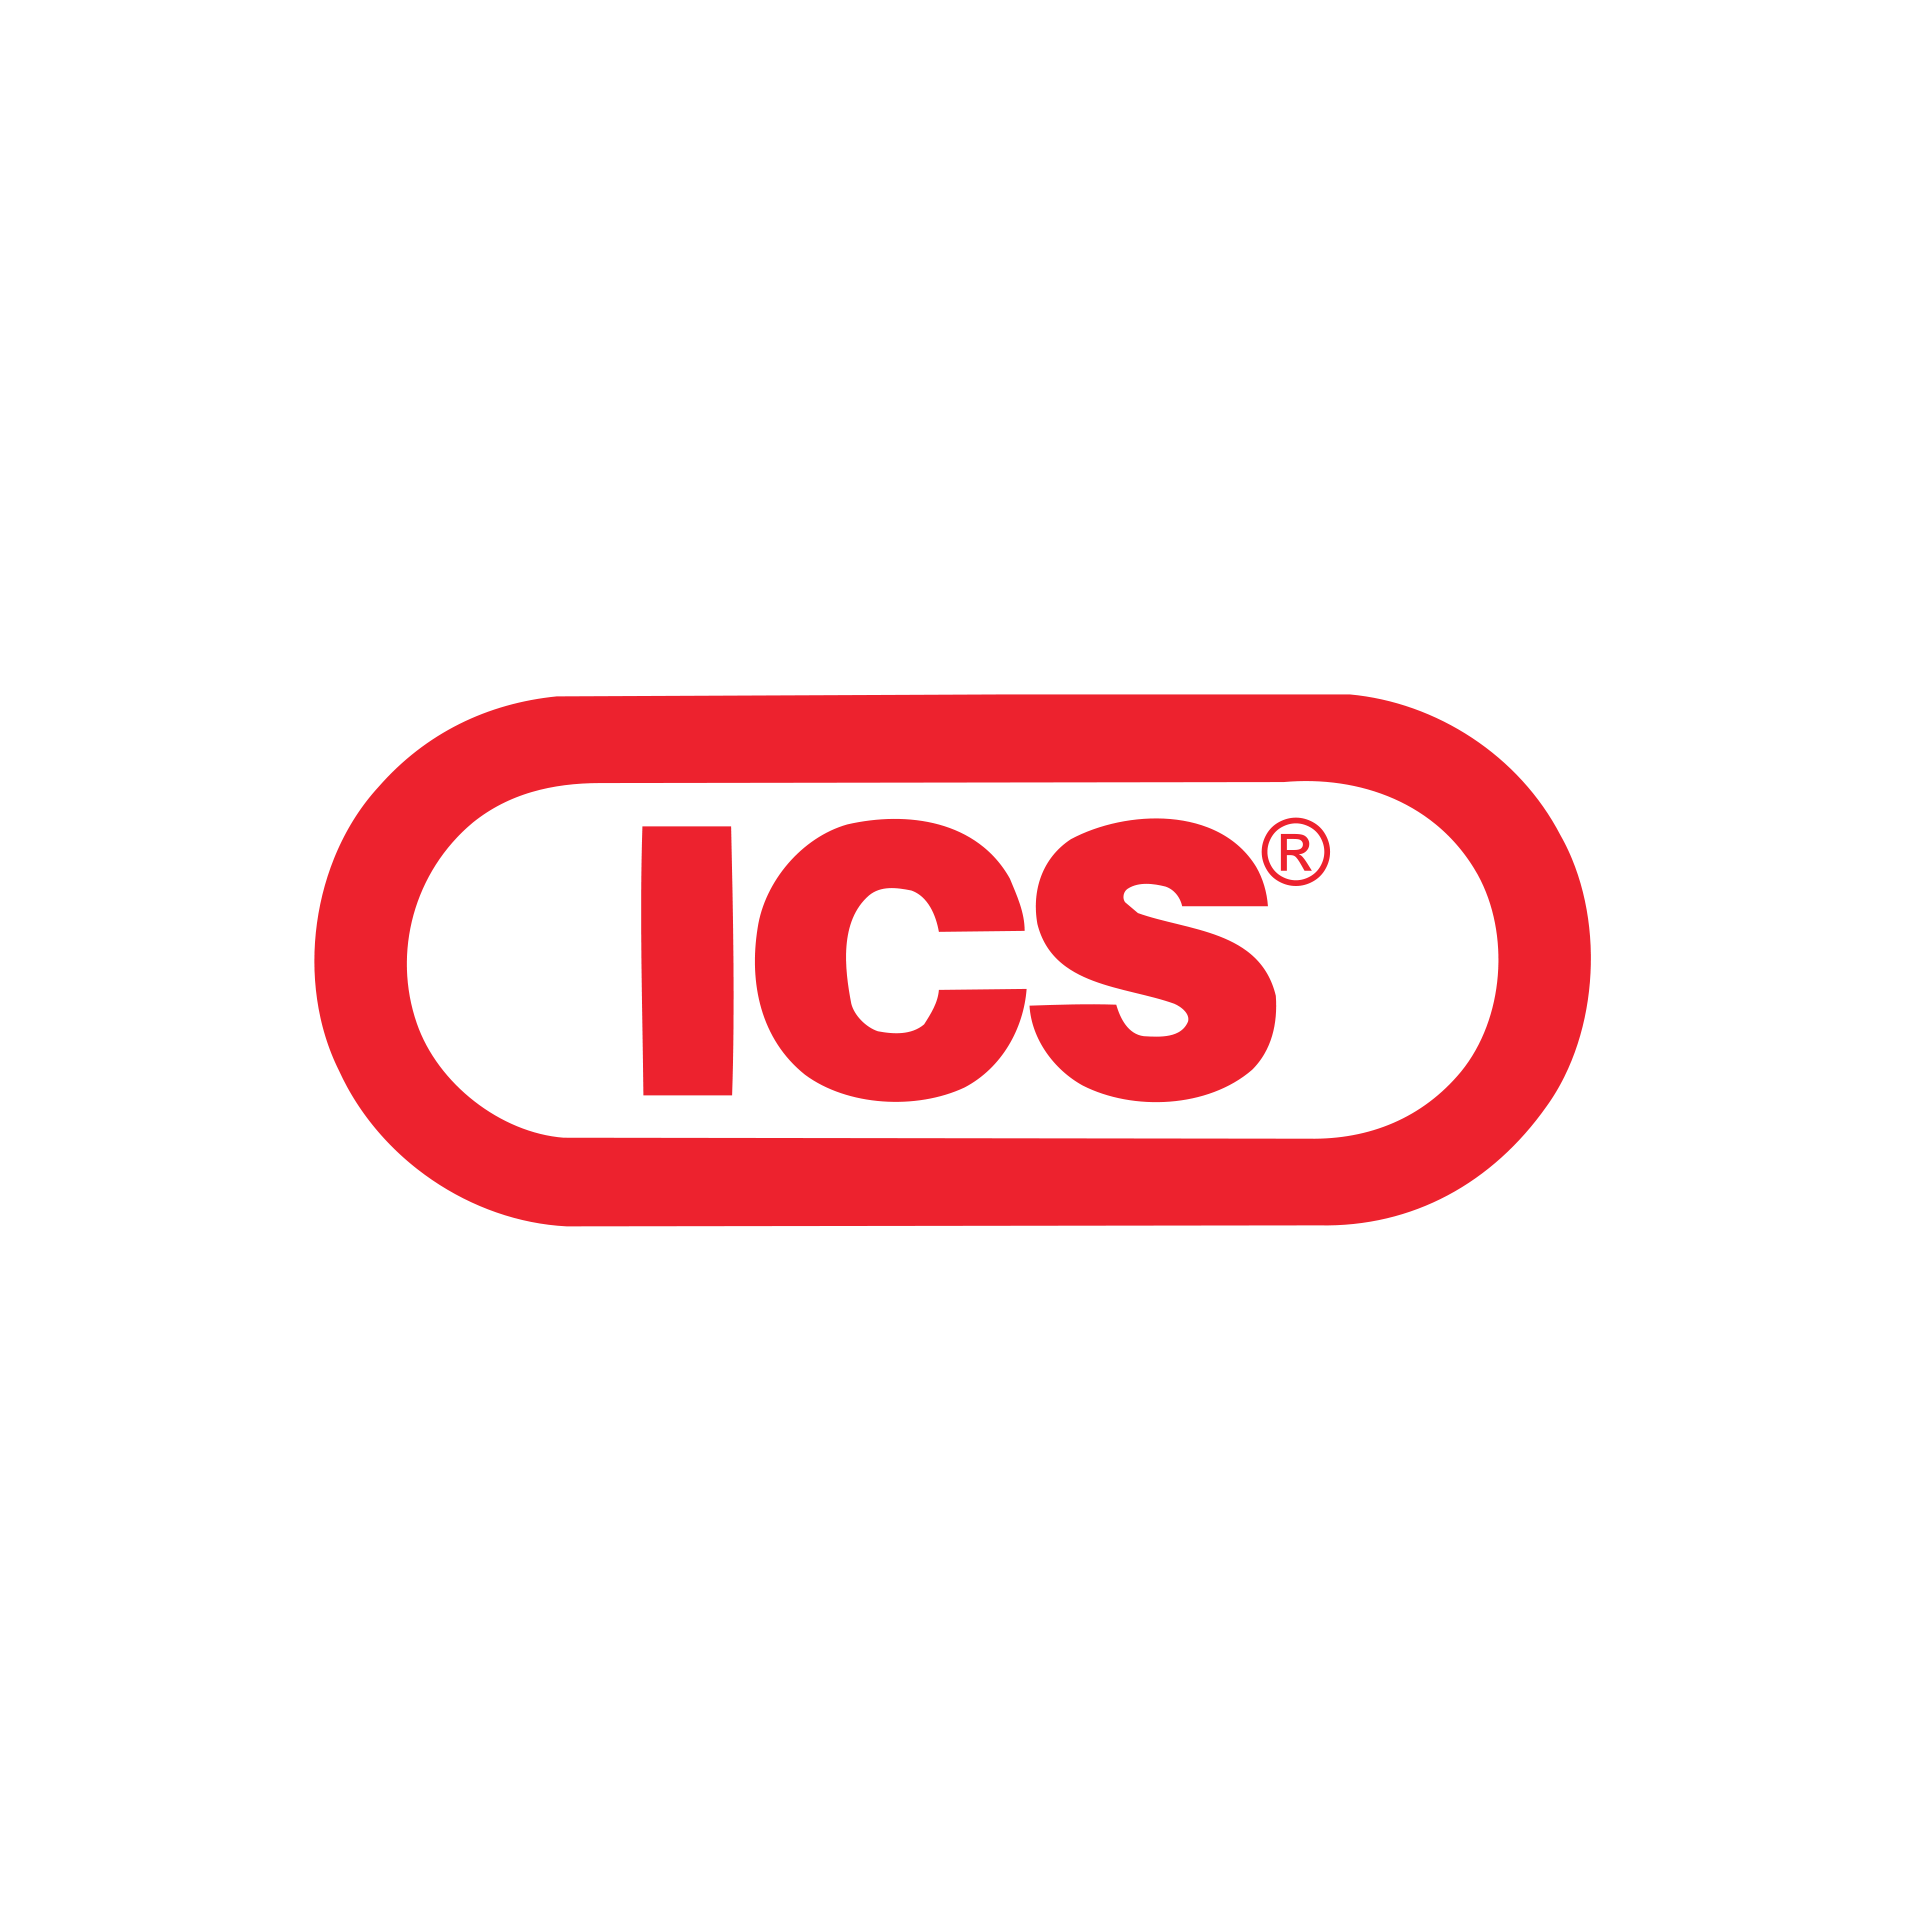 ICS